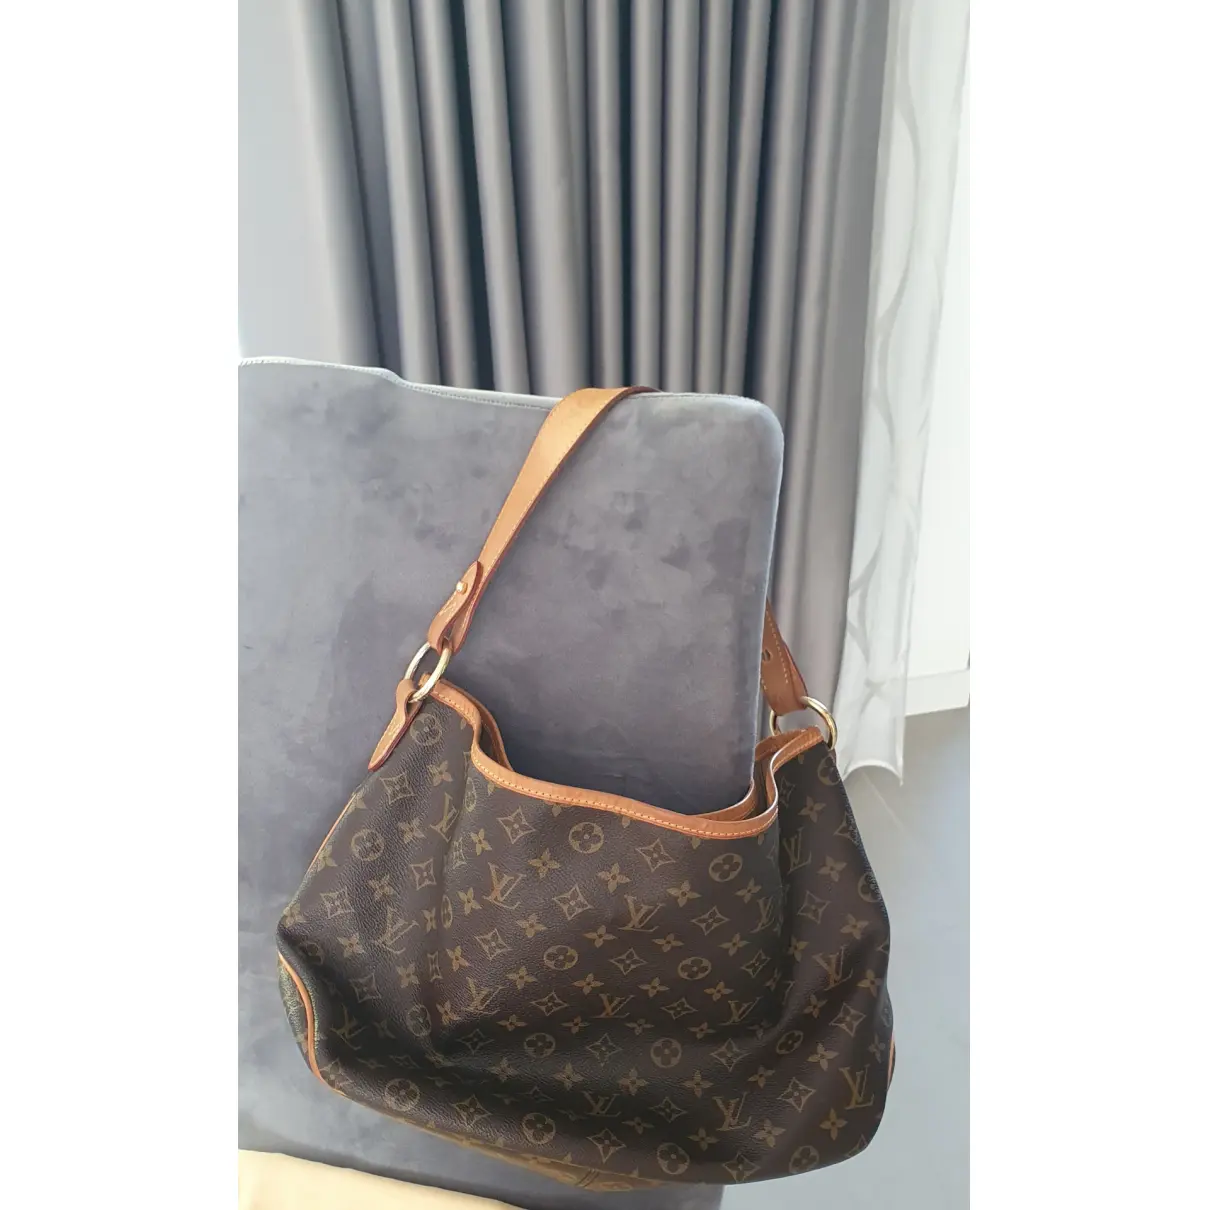 Buy Louis Vuitton Delightful leather handbag online